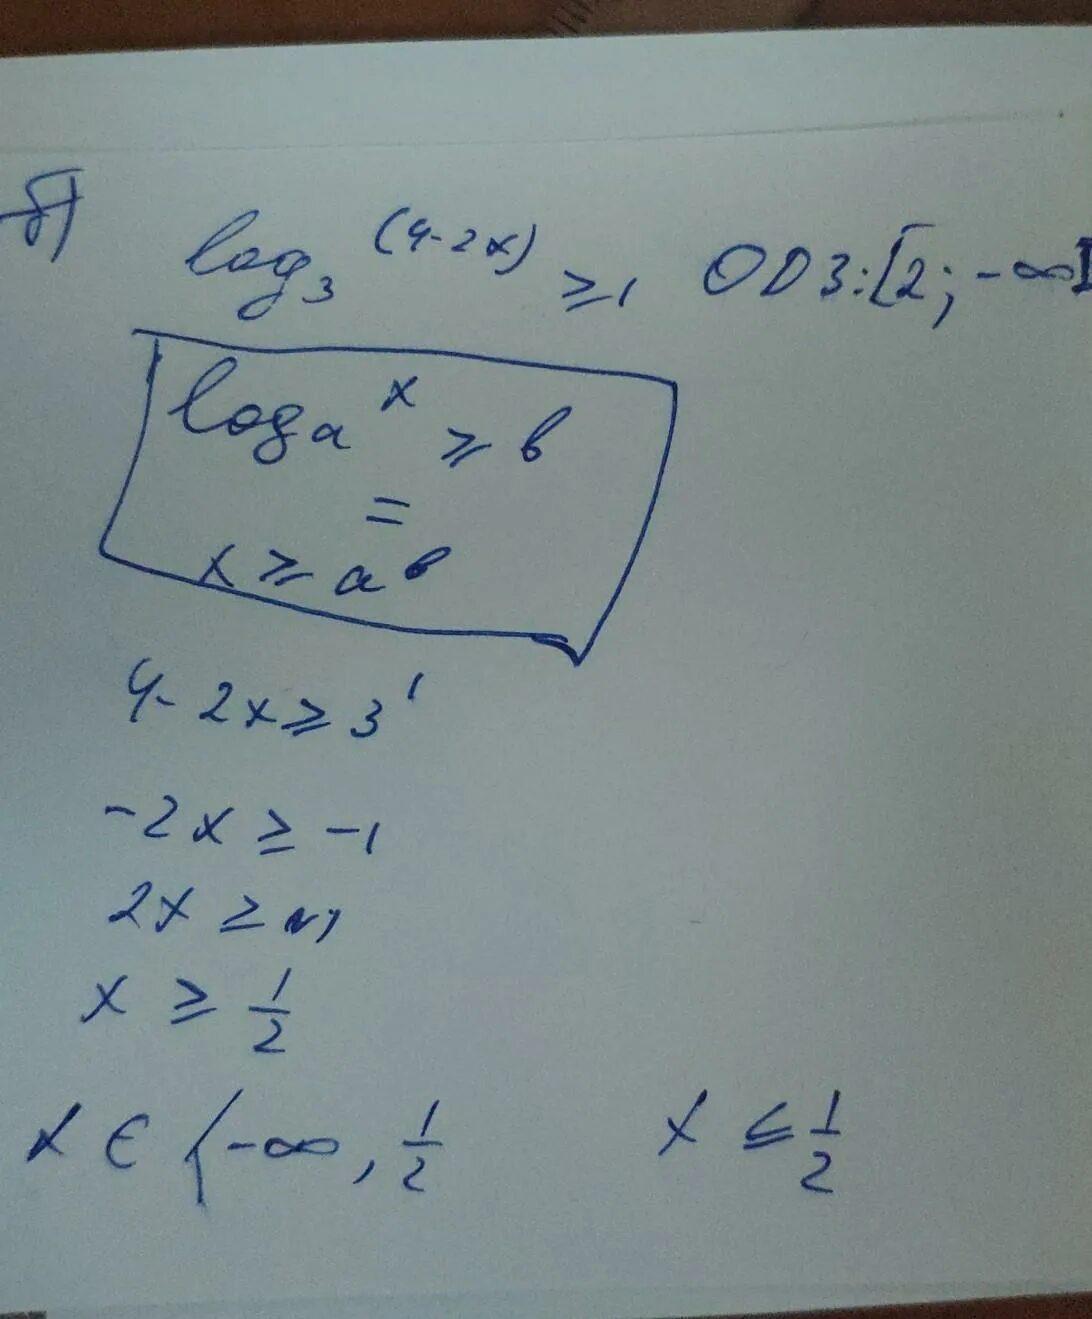 Log2 x больше или равен -2. Log2 x больше или равно 1. Log2(x²-2x)больше или равно 3. Log1 3 x-1 больше или равно log1/3. Log 2 x больше 3